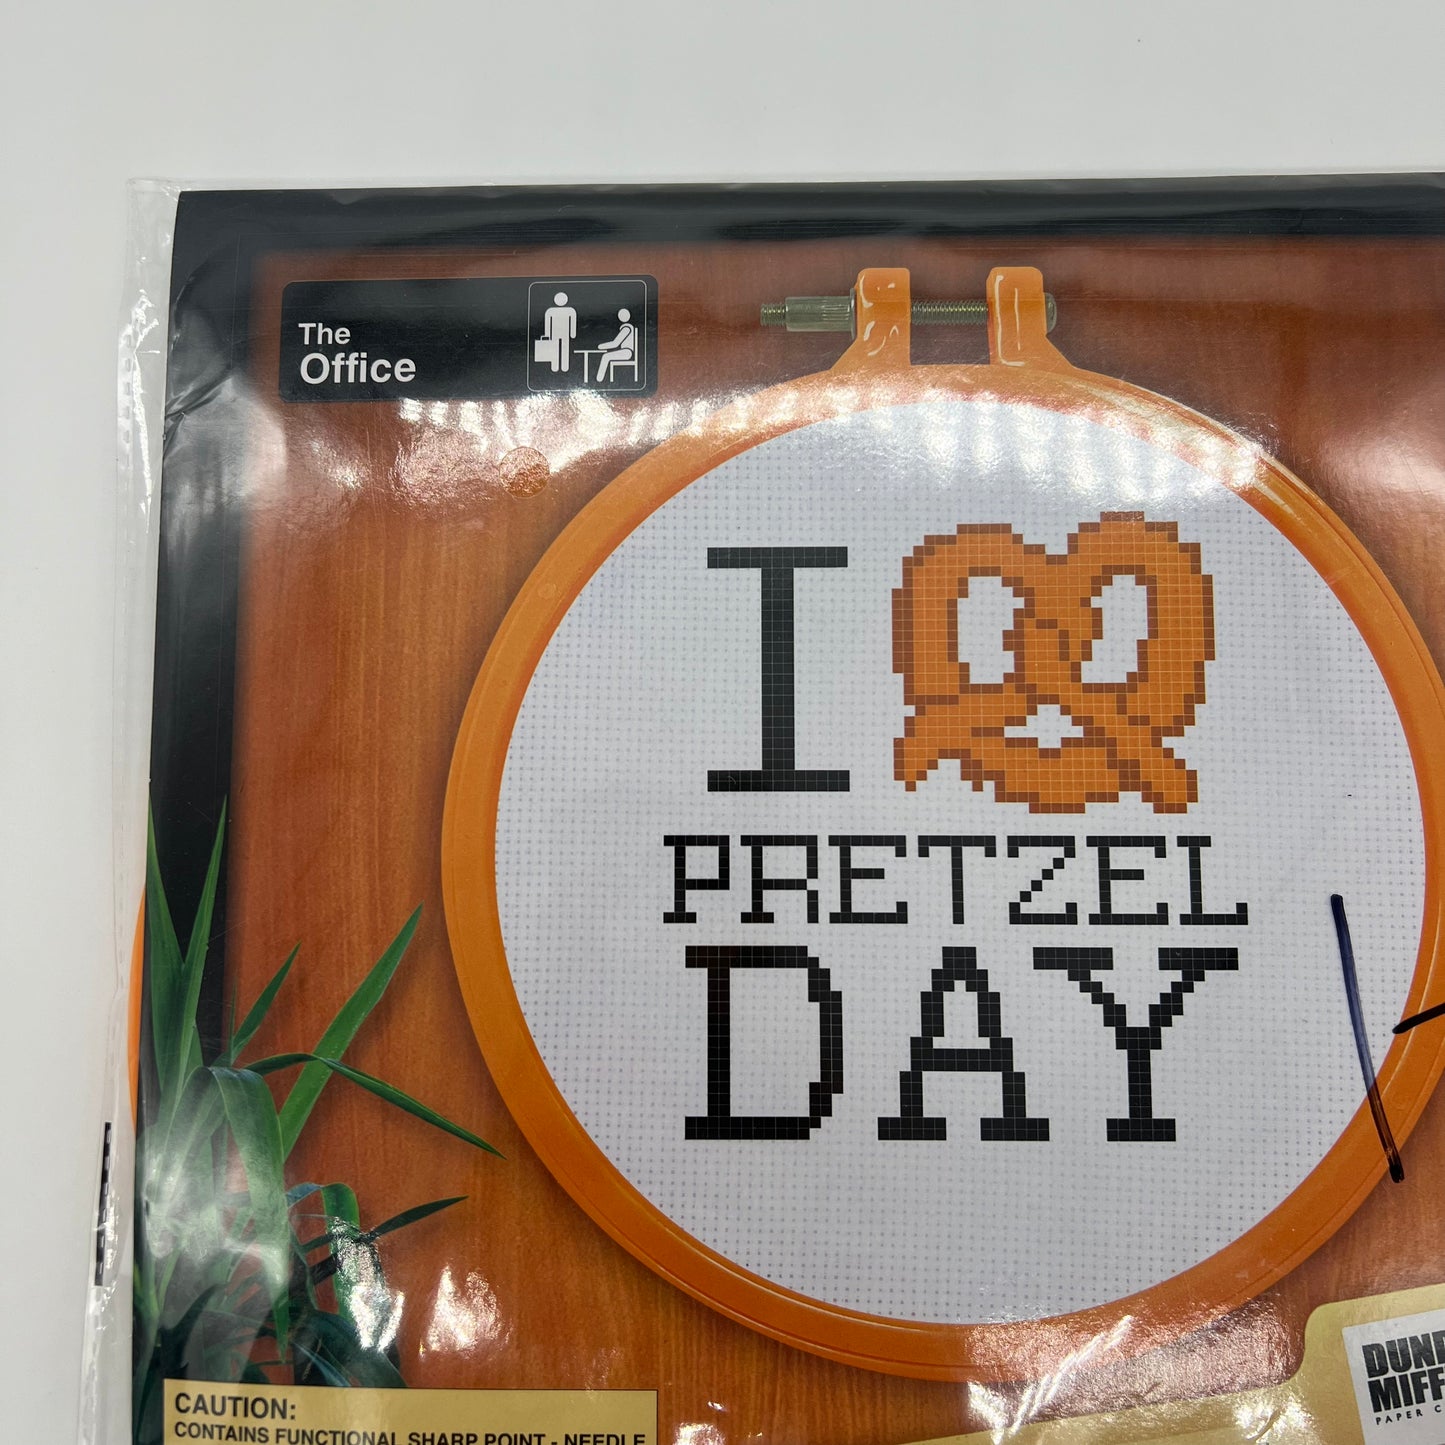 "The Office" Pretzel Day Cross stitch Kit